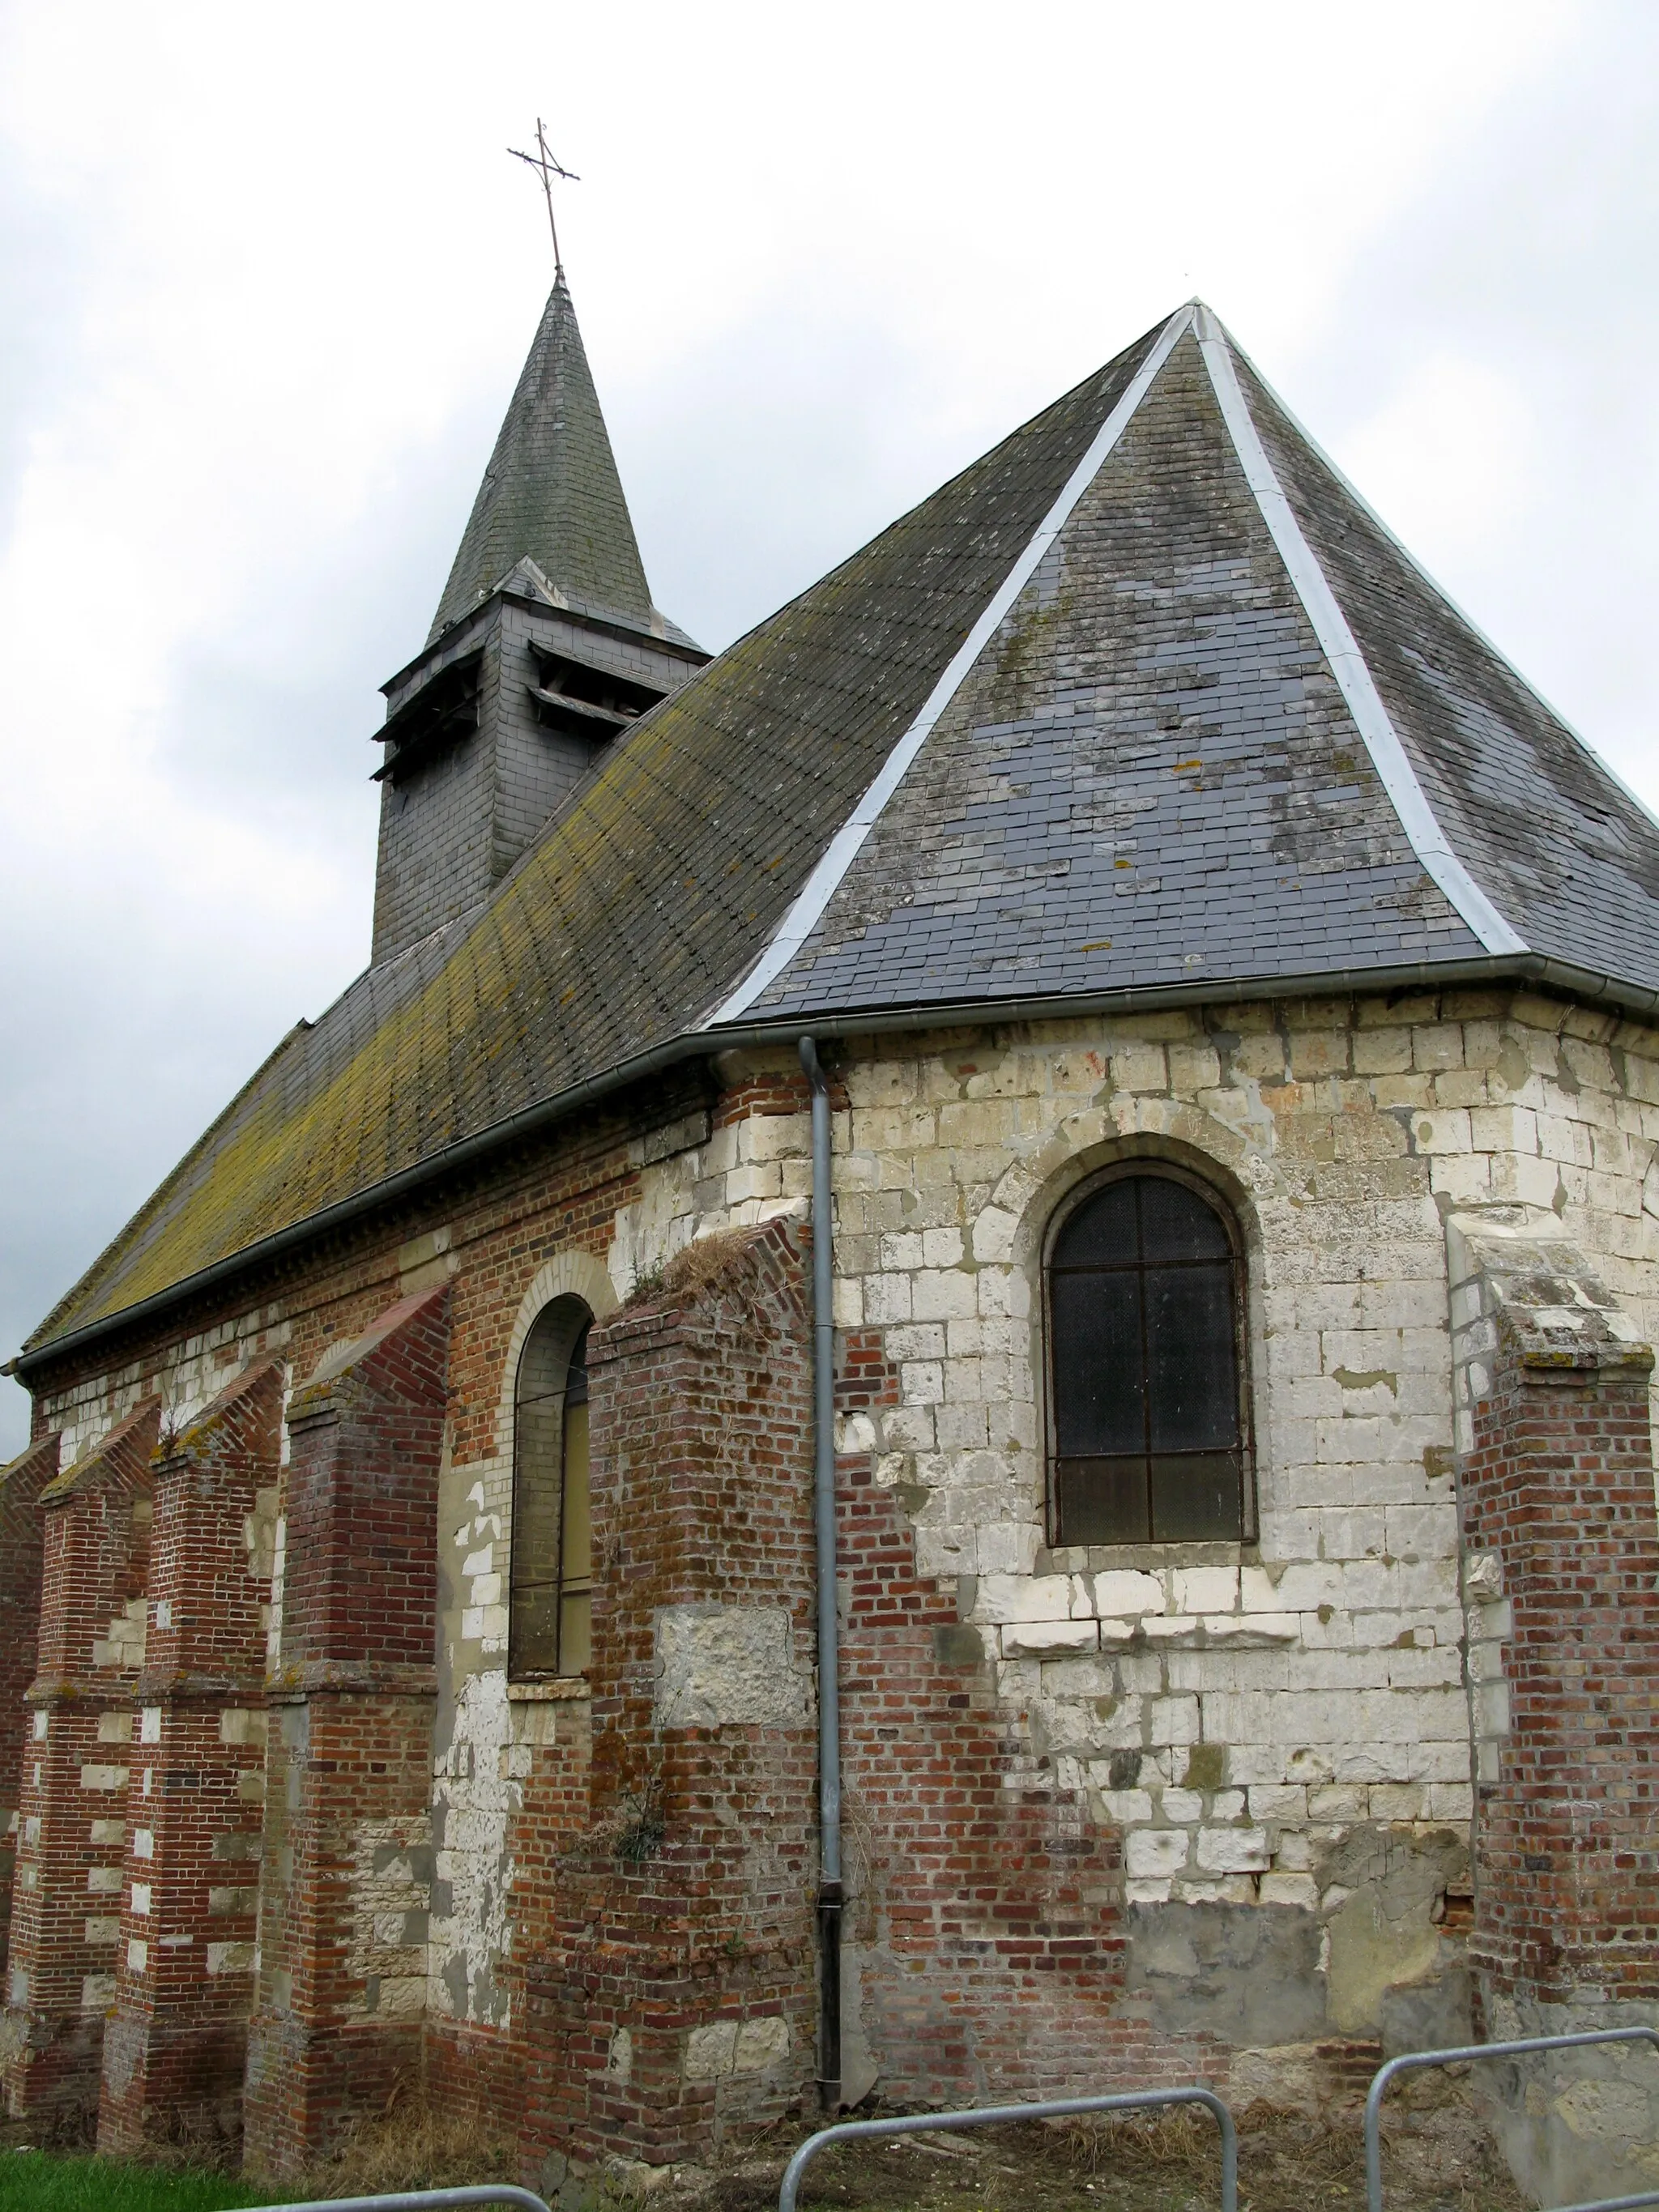 Photo showing: Ainval, hameau de Grivesnes (Somme, France) -

La croix surmontant la courte flèche du clocher a souffert d'une tempête récente.